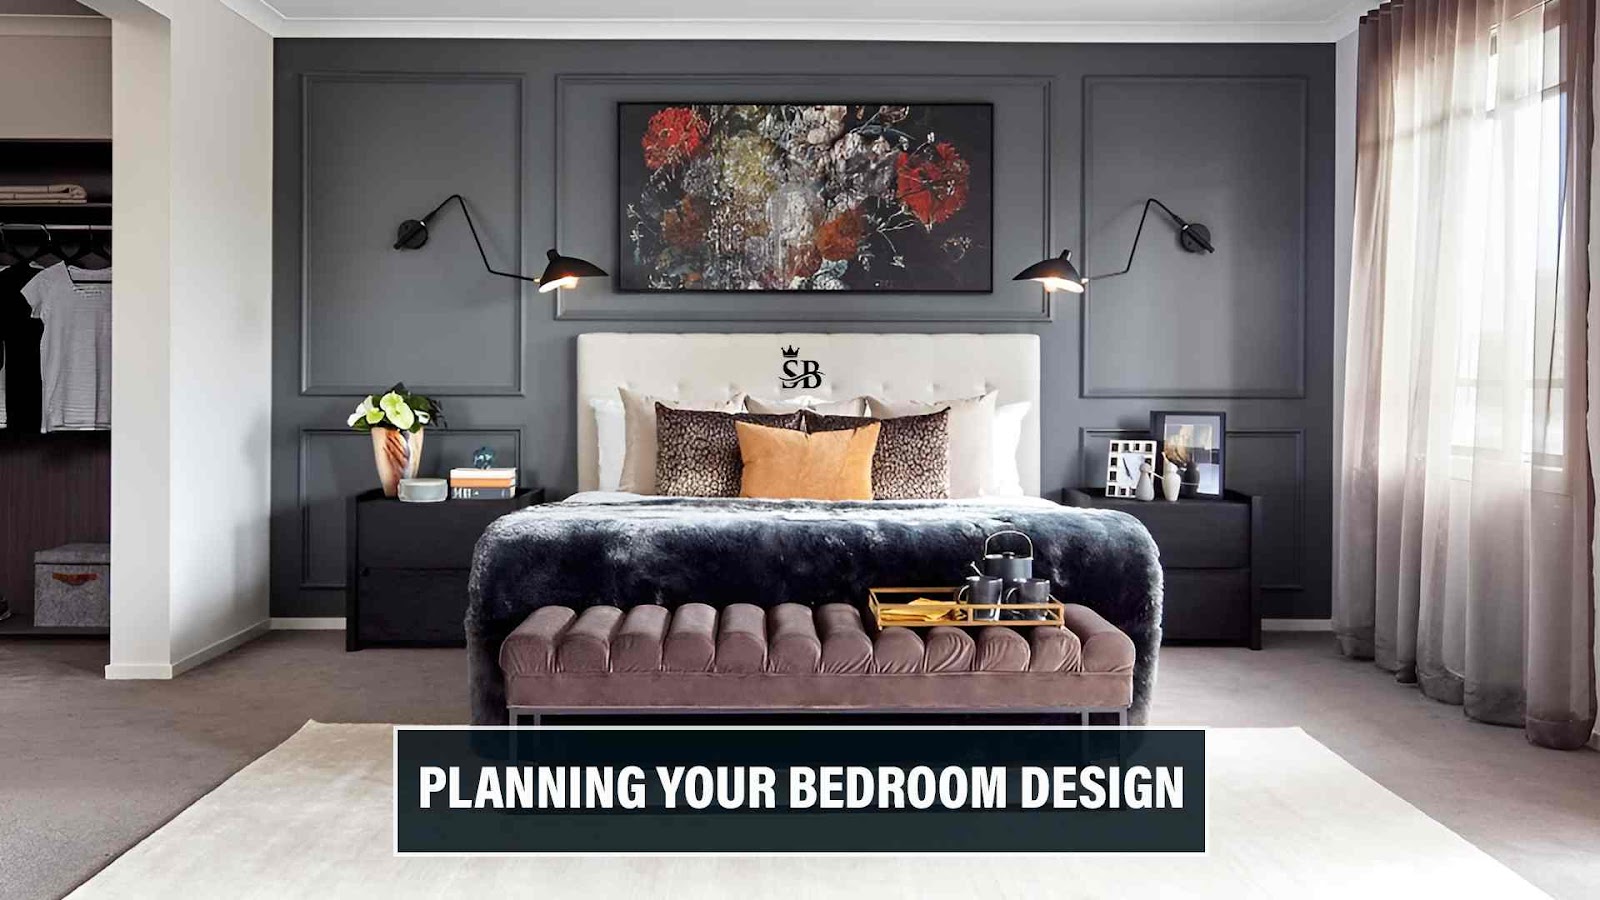 Planning Your Bedroom Design